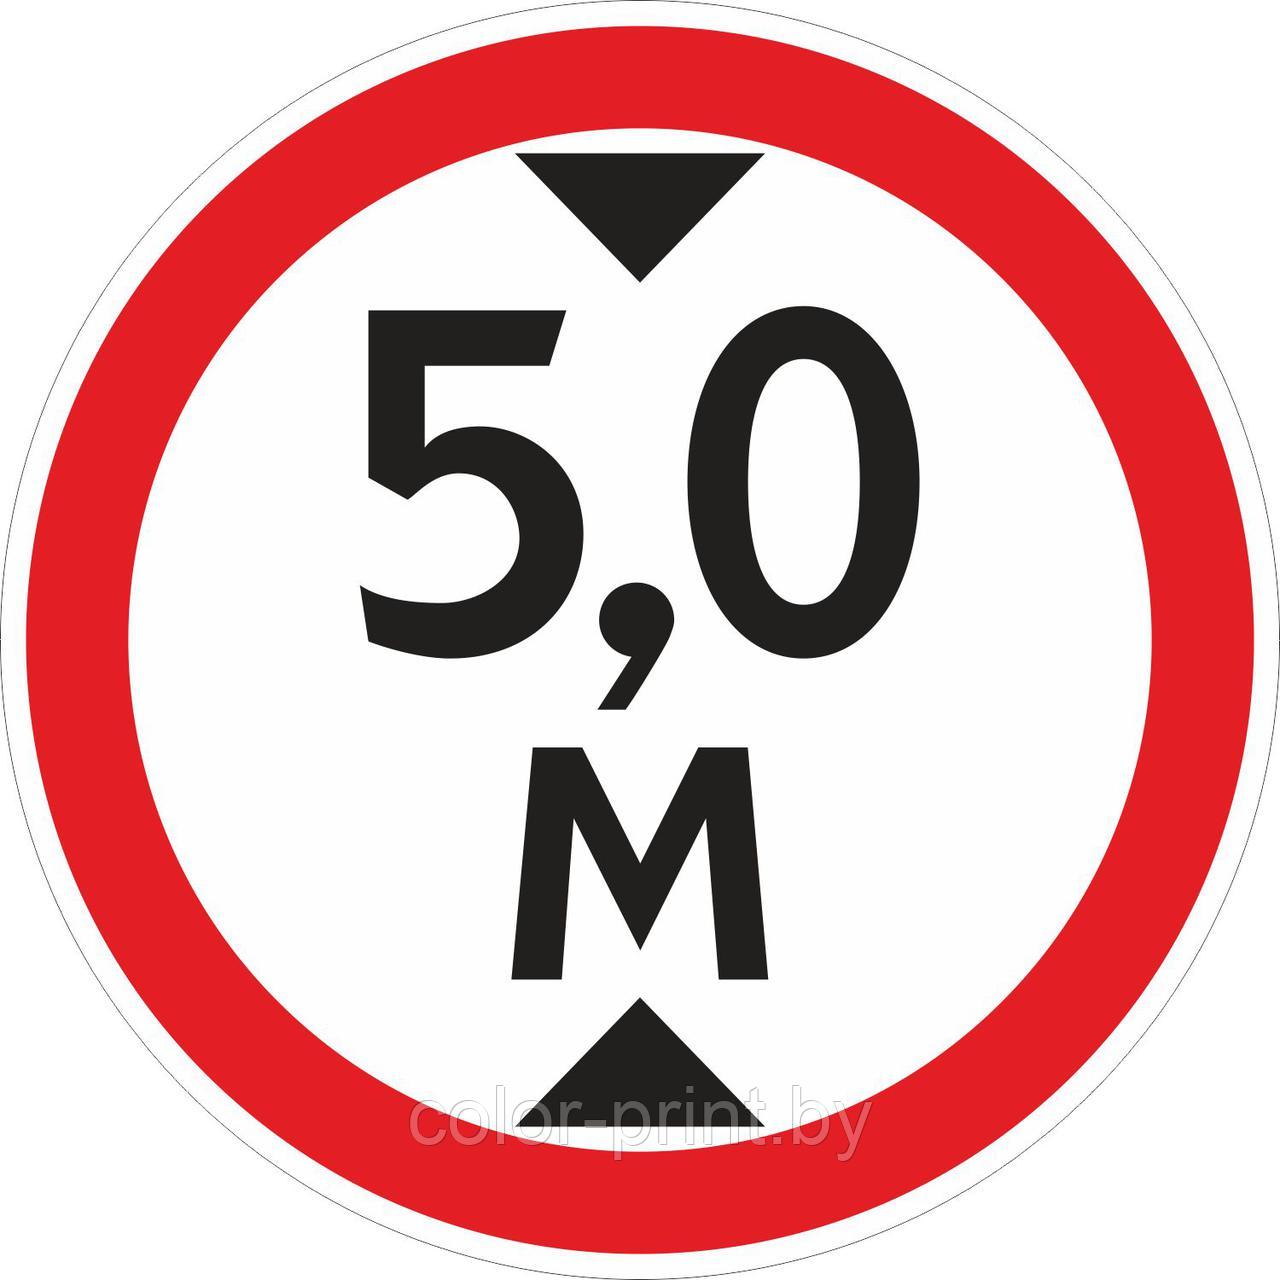 Наклейка ПВХ "Ограничение высоты проезда 5.0м" 400*400мм